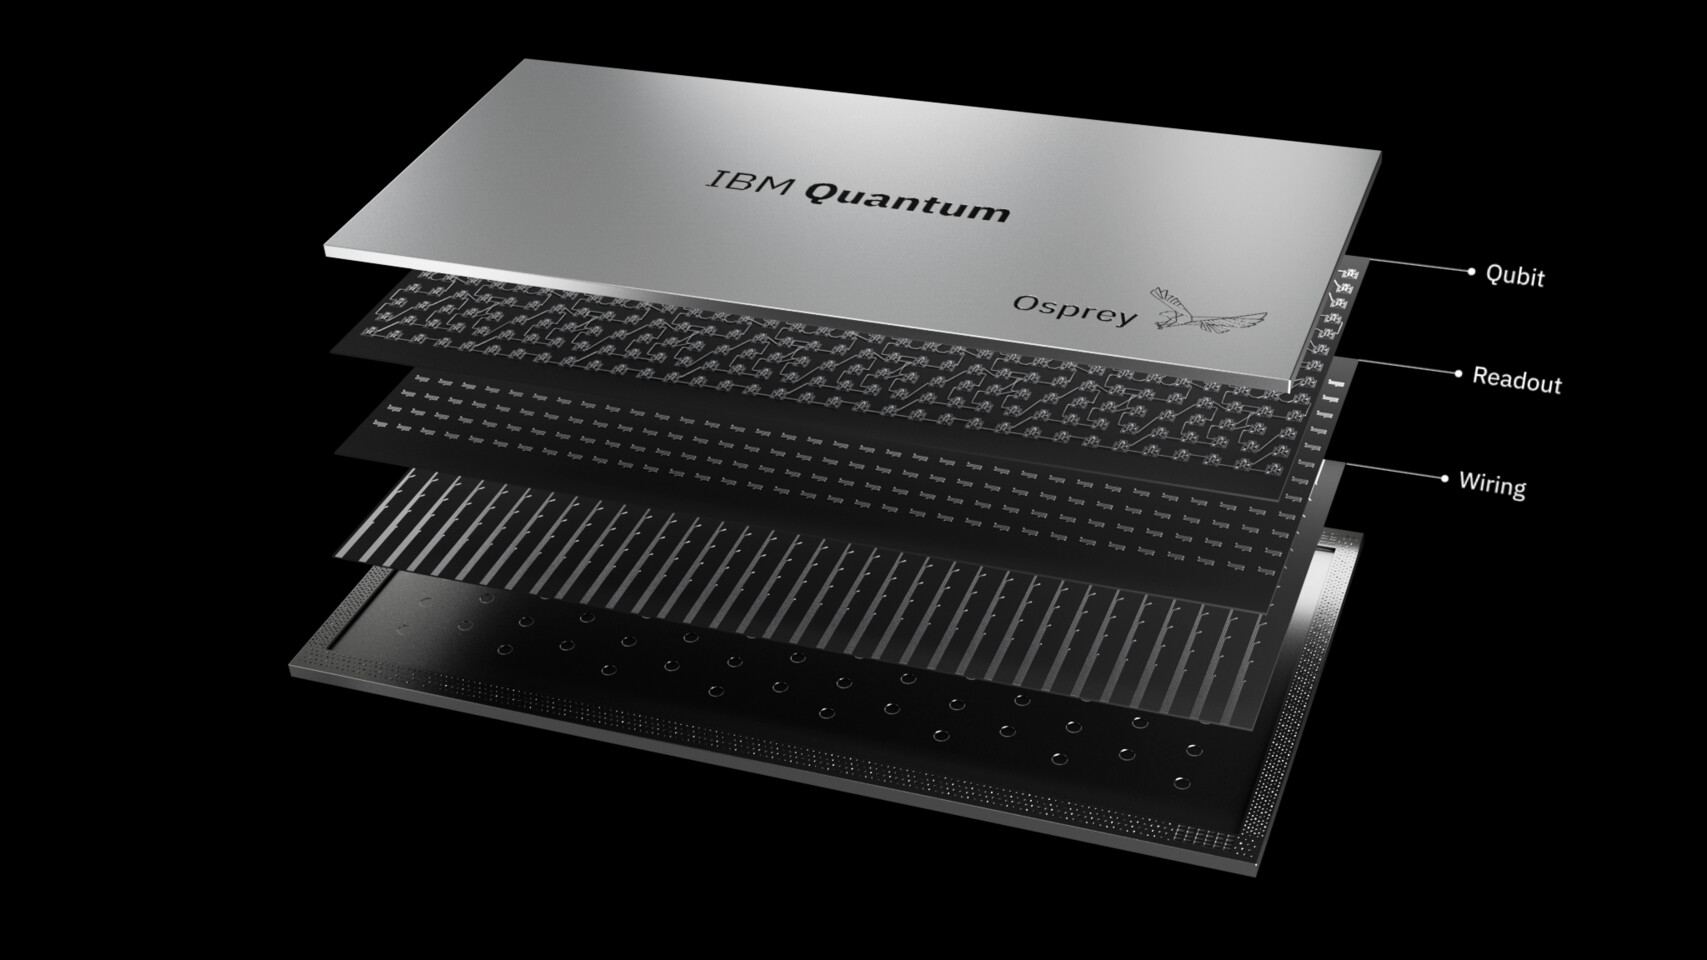 IBM Osprey trae 433 qubits para computación cuántica